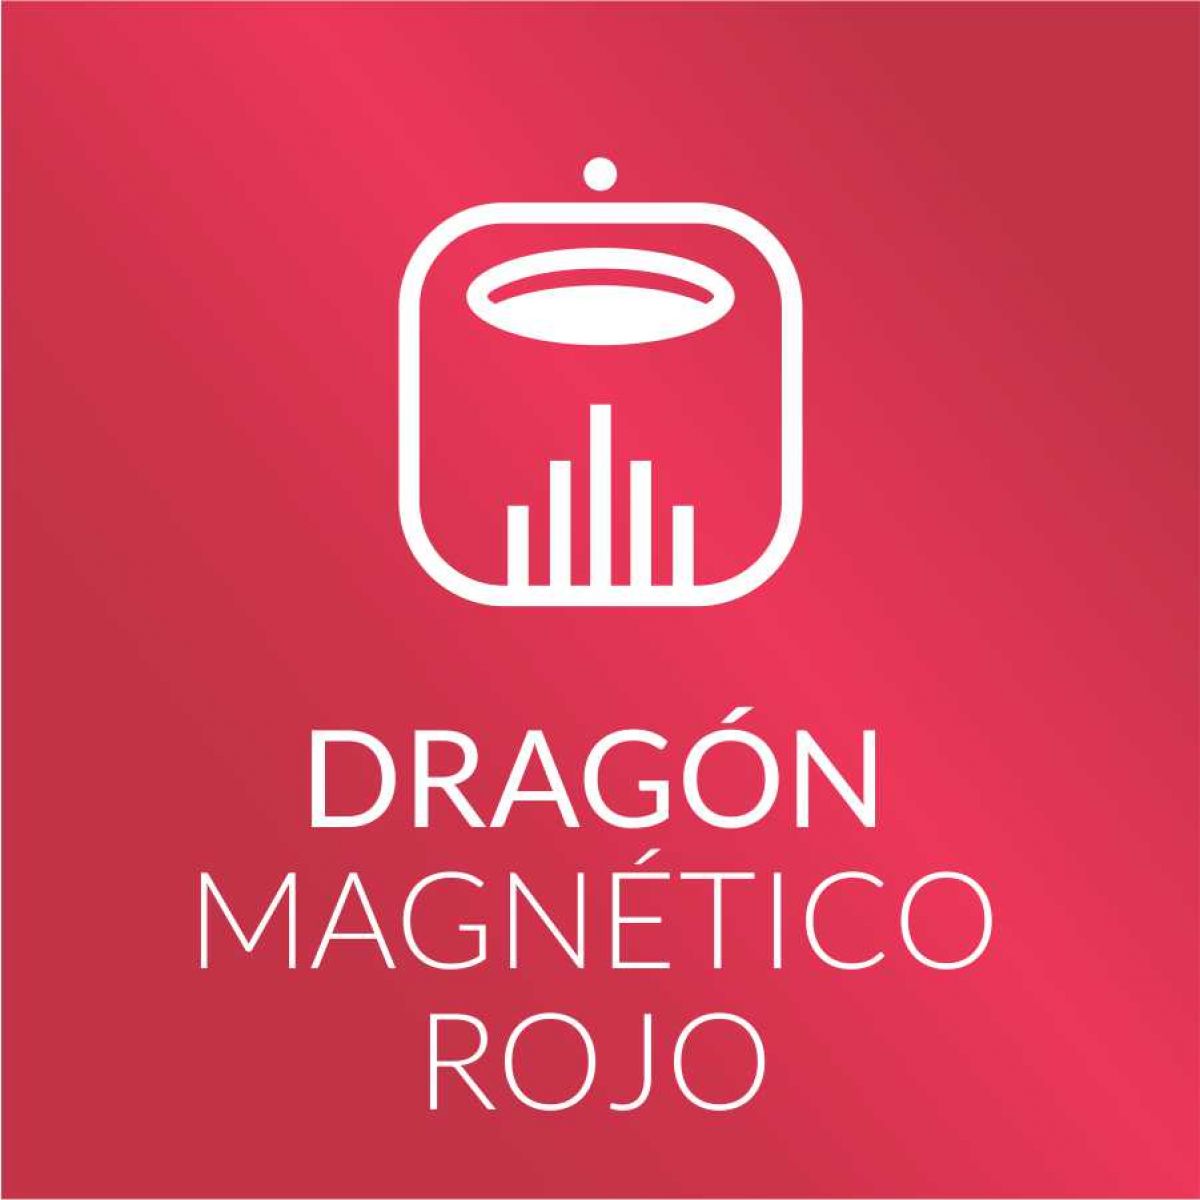 Dragón Magnético Rojo	